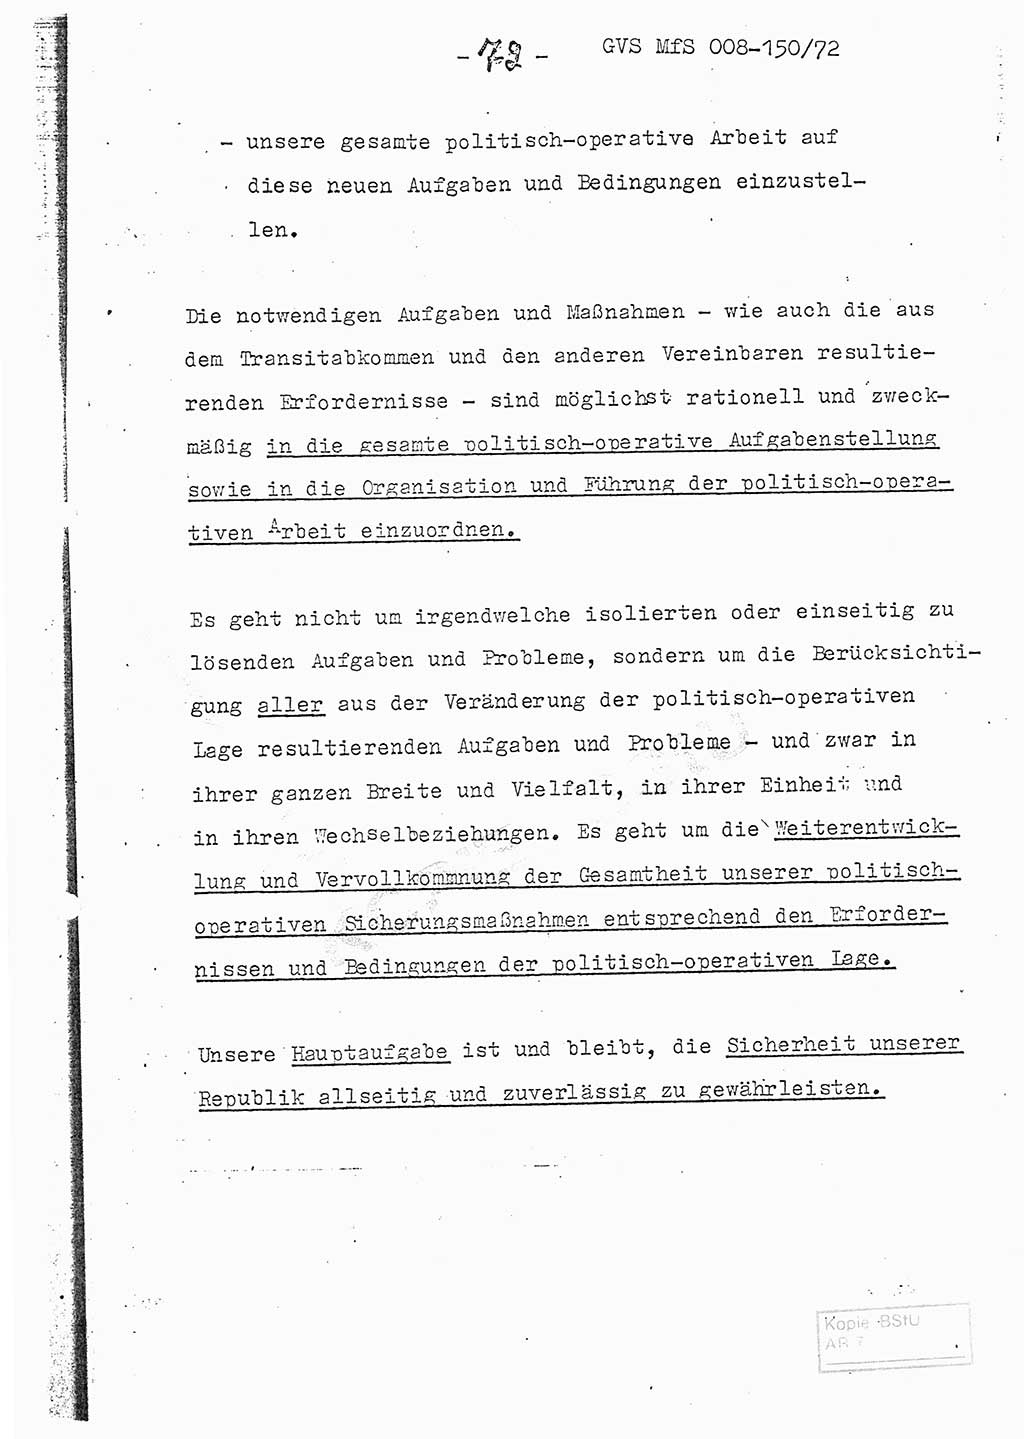 Referat (Entwurf) des Genossen Minister (Generaloberst Erich Mielke) auf der Dienstkonferenz 1972, Ministerium für Staatssicherheit (MfS) [Deutsche Demokratische Republik (DDR)], Der Minister, Geheime Verschlußsache (GVS) 008-150/72, Berlin 25.2.1972, Seite 72 (Ref. Entw. DK MfS DDR Min. GVS 008-150/72 1972, S. 72)